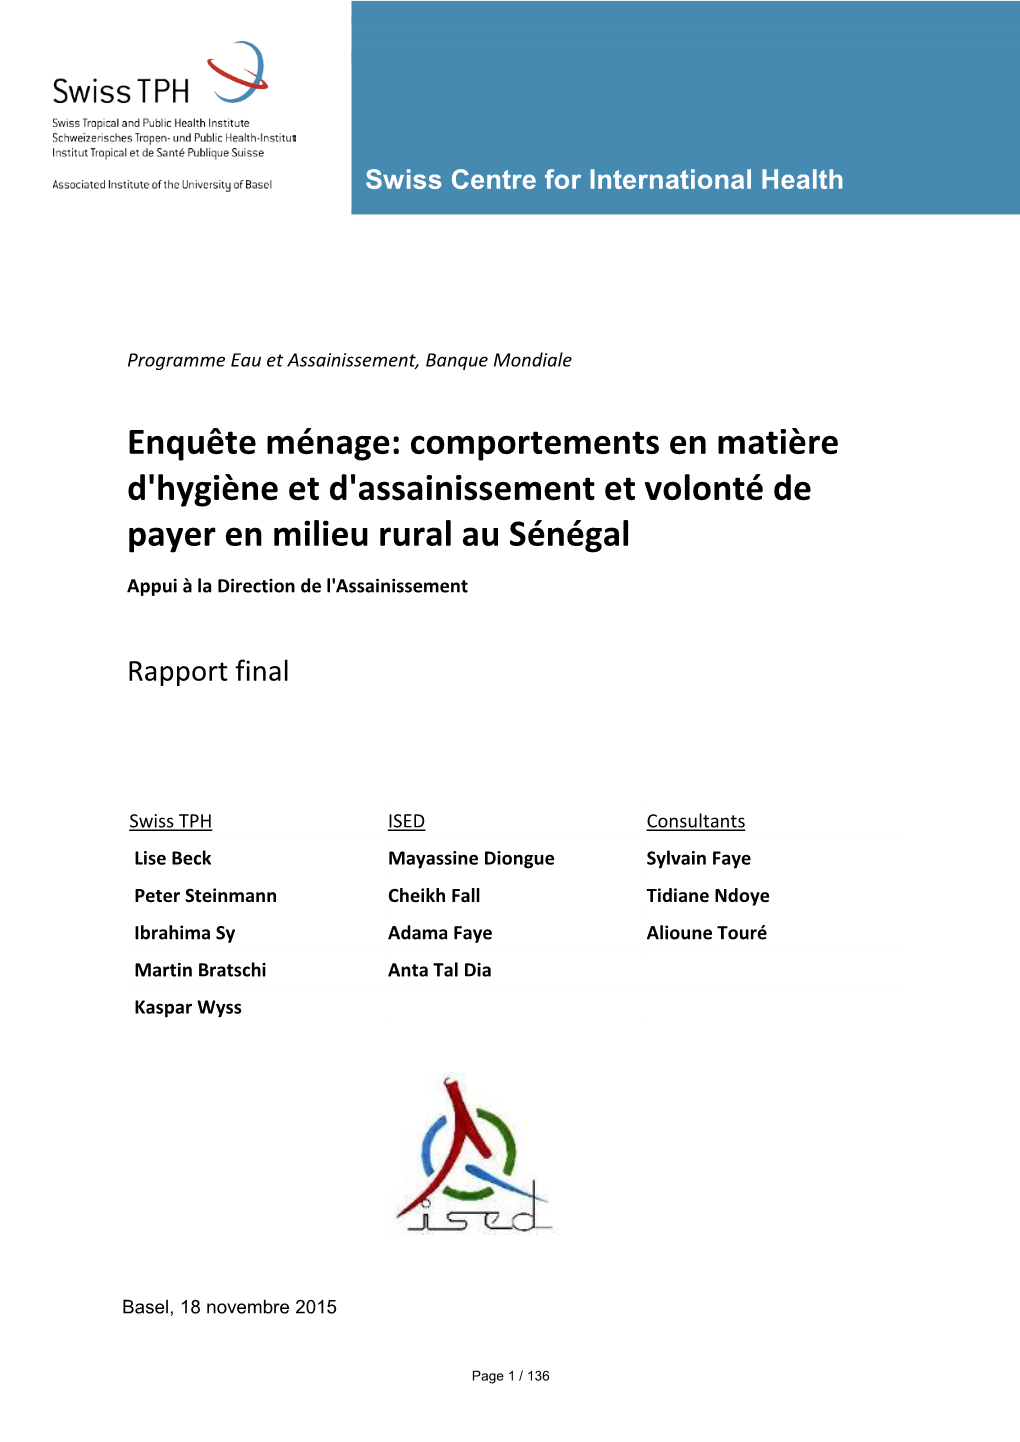 Comportements En Matière D'hygiène Et D'assainissement Et Volonté De Payer En Milieu Rural Au Sénégal